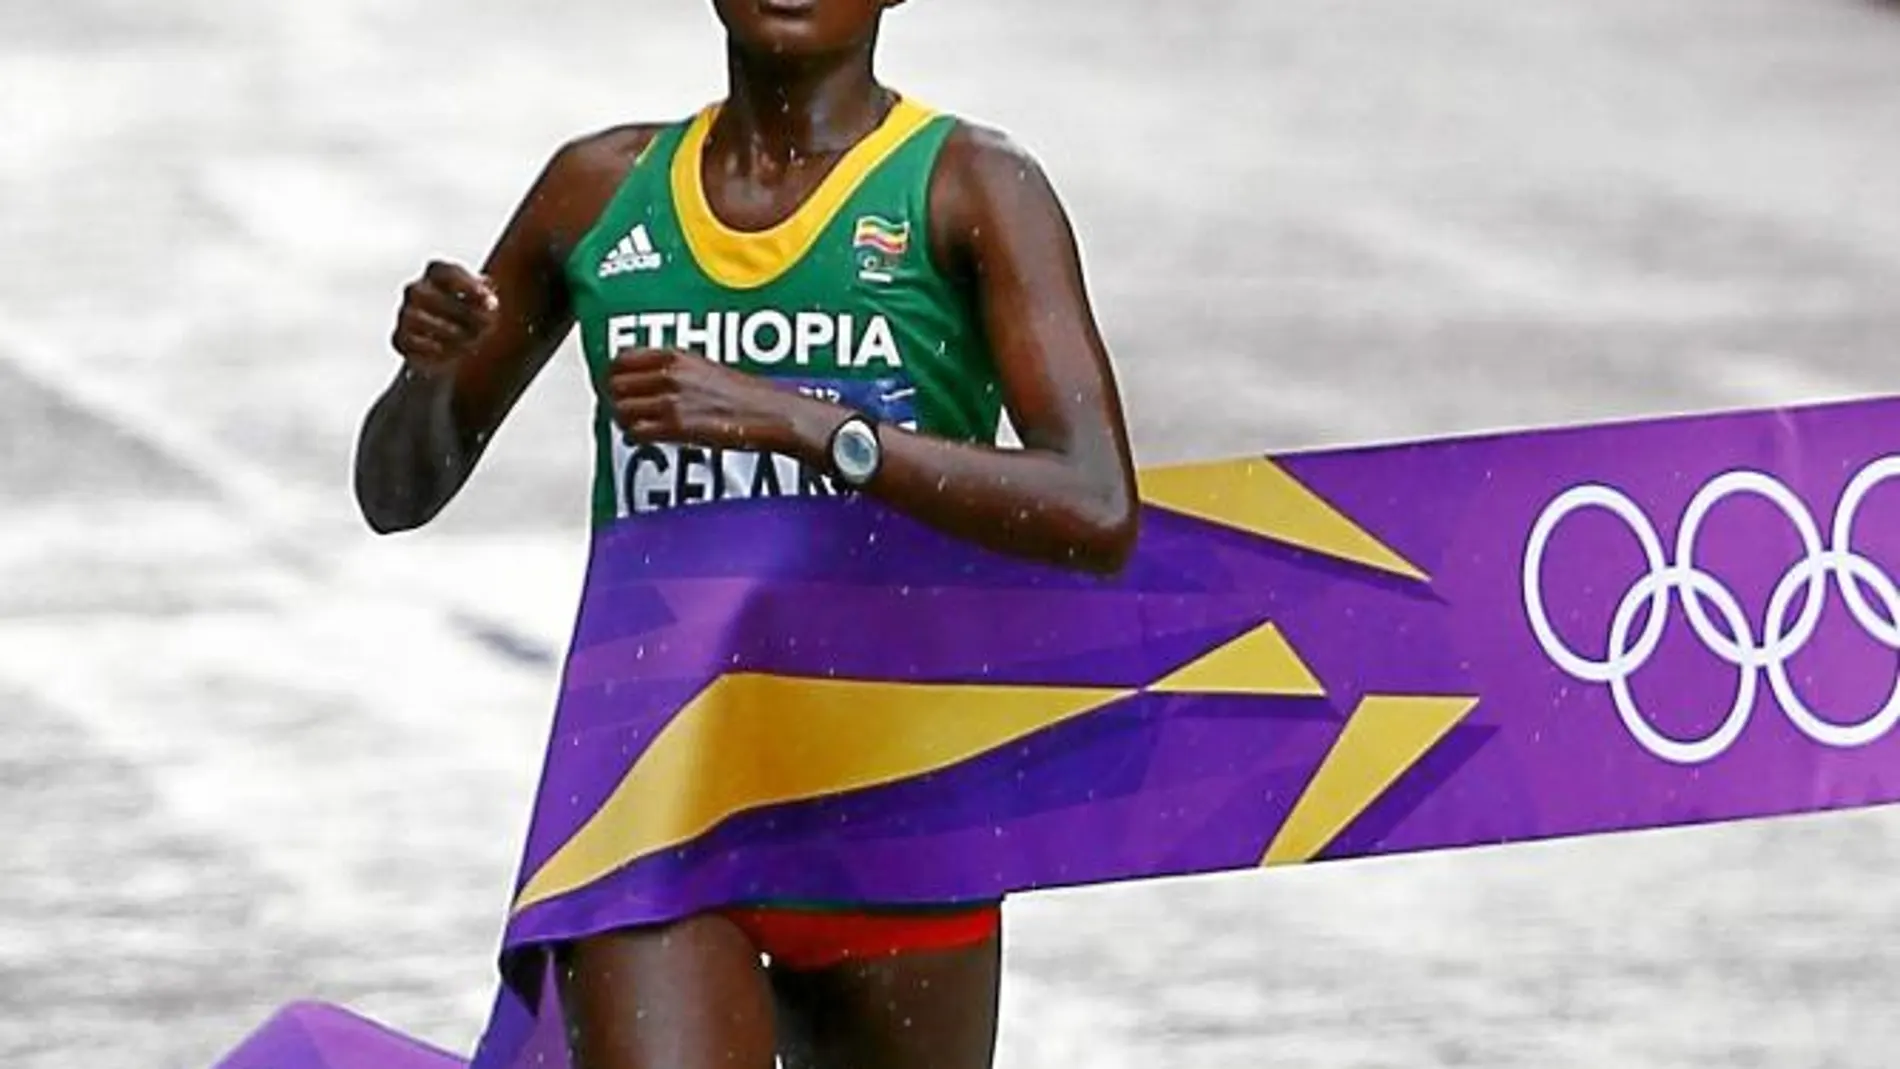 La etíope ganó el maratón